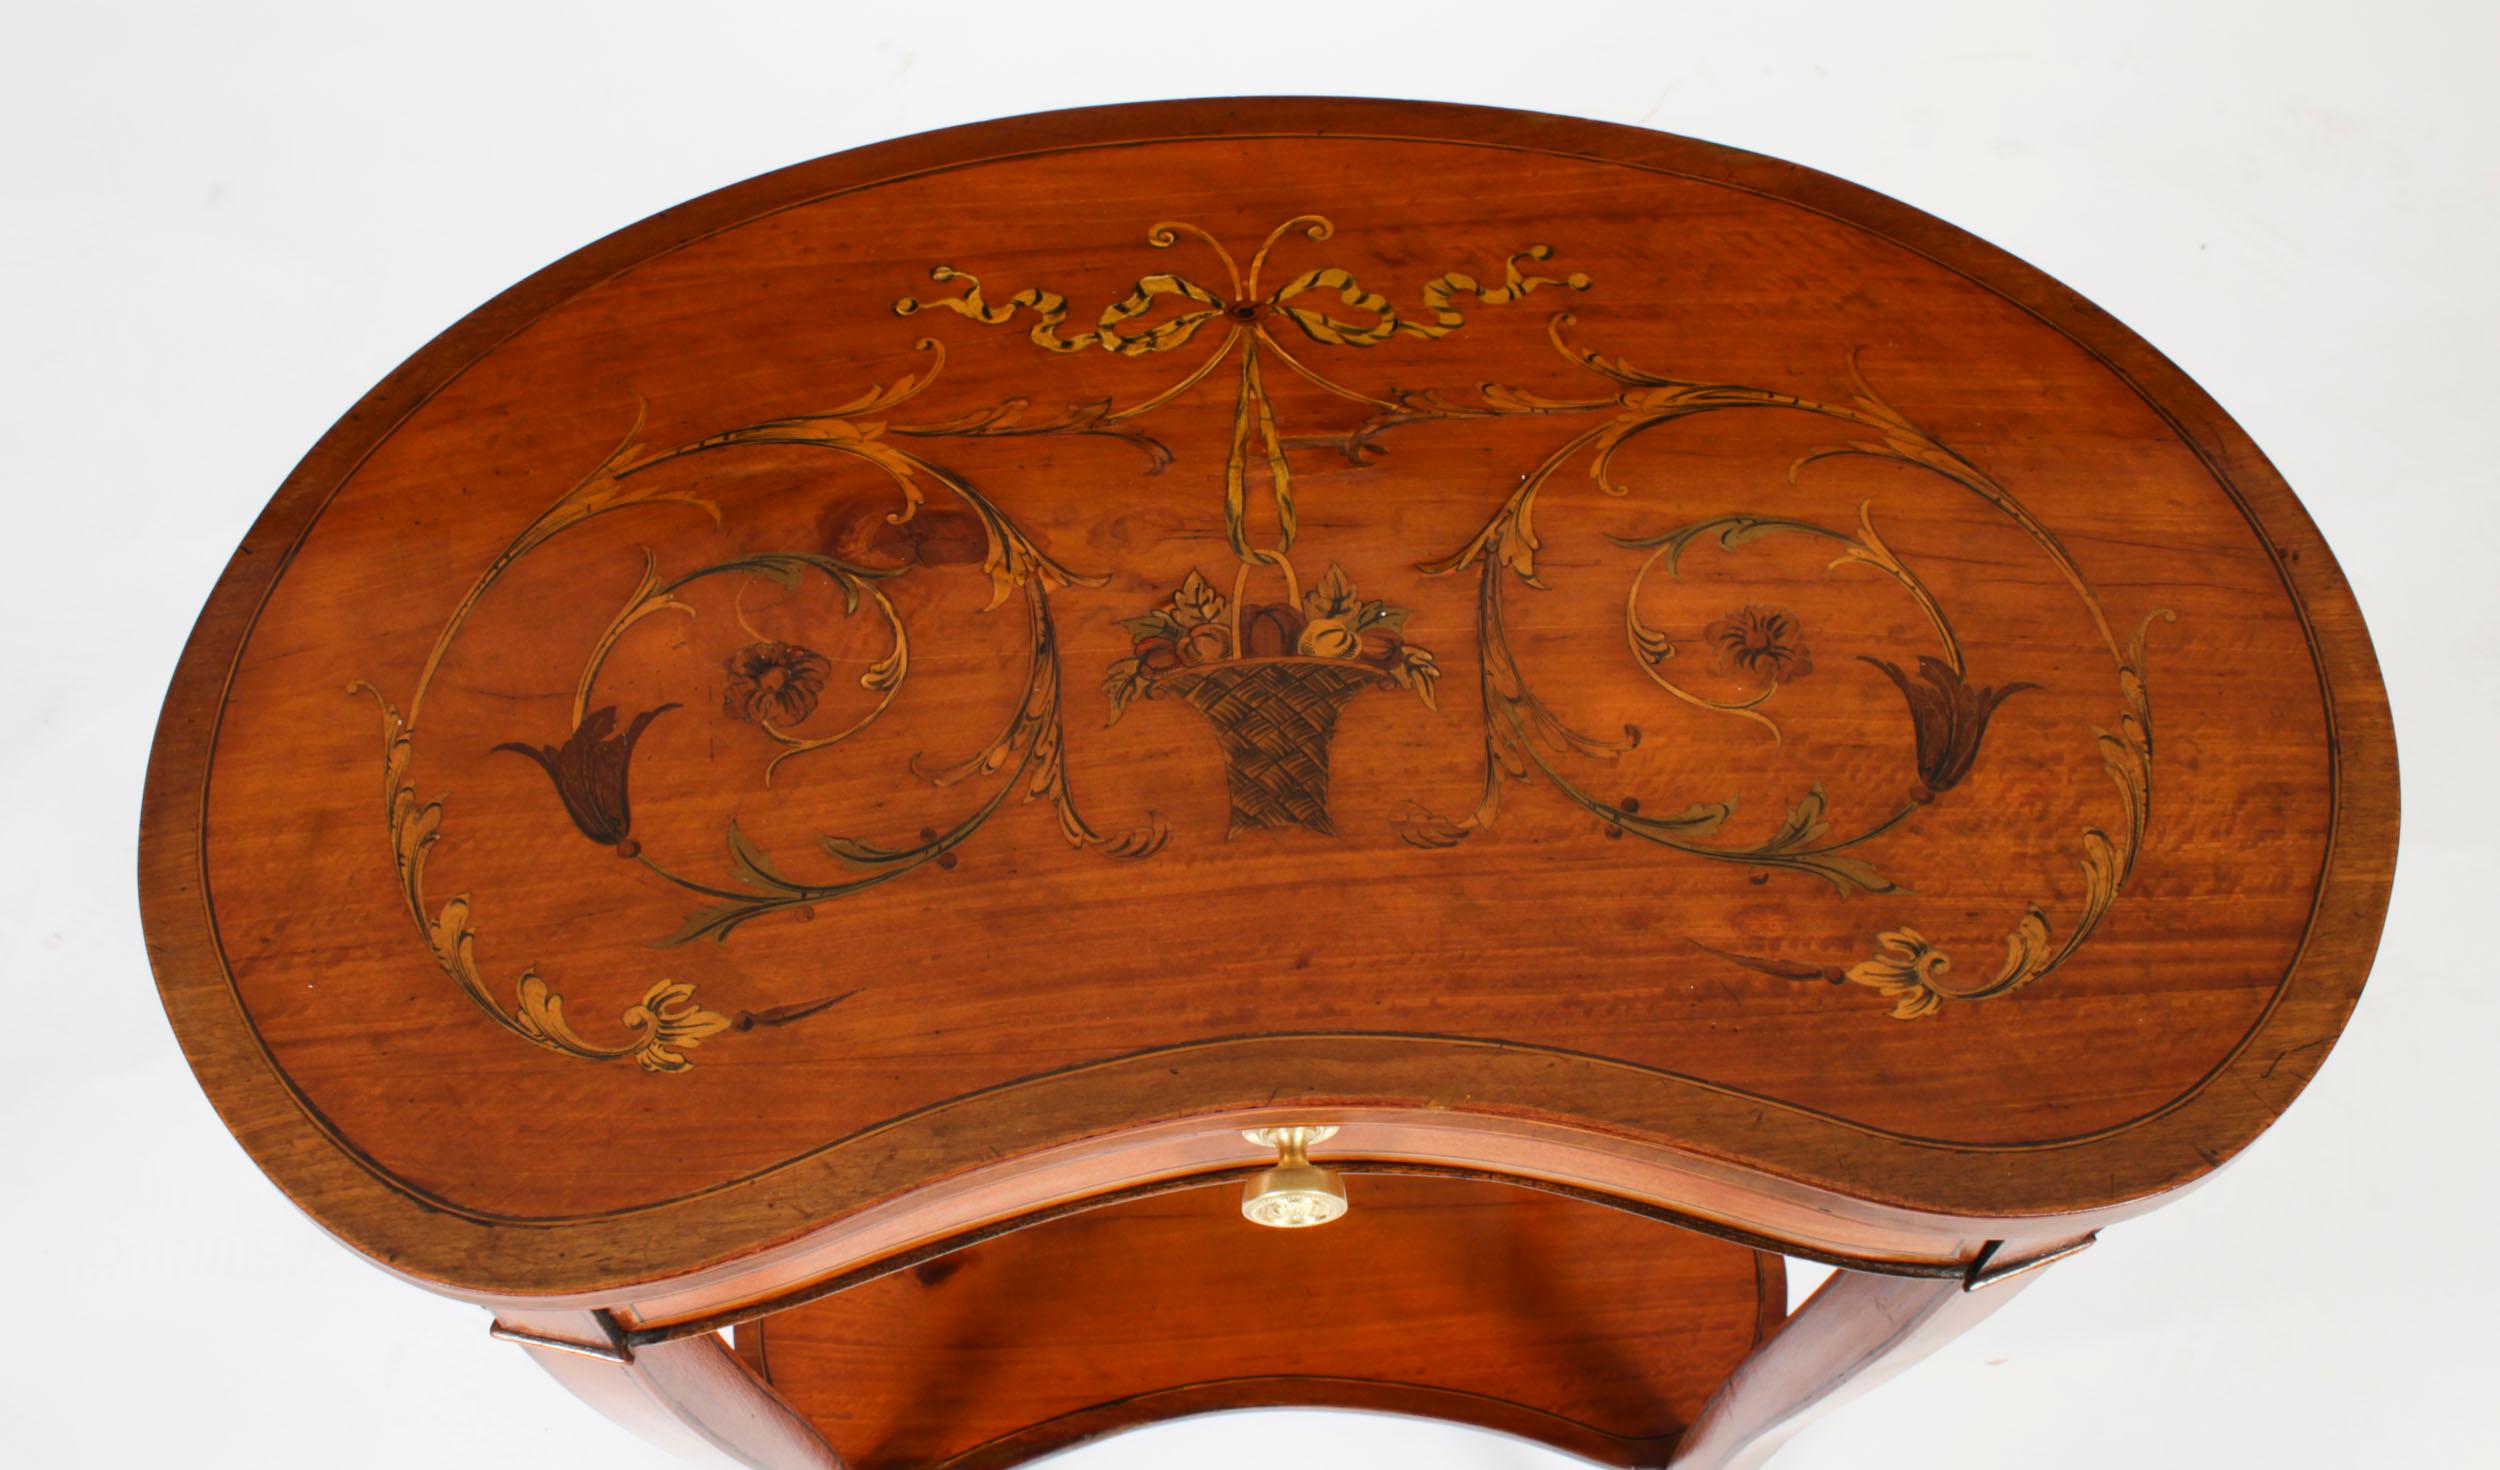 Dies ist eine schöne antike englische Satinholz Niere geformt Satinholz  Beistelltische mit Intarsienarbeit, CIRCA 1880.

Der Tisch hat eine quer verlaufende Platte, die schön mit Blumenbändern eingelegt ist, und einen Fries mit einer nützlichen